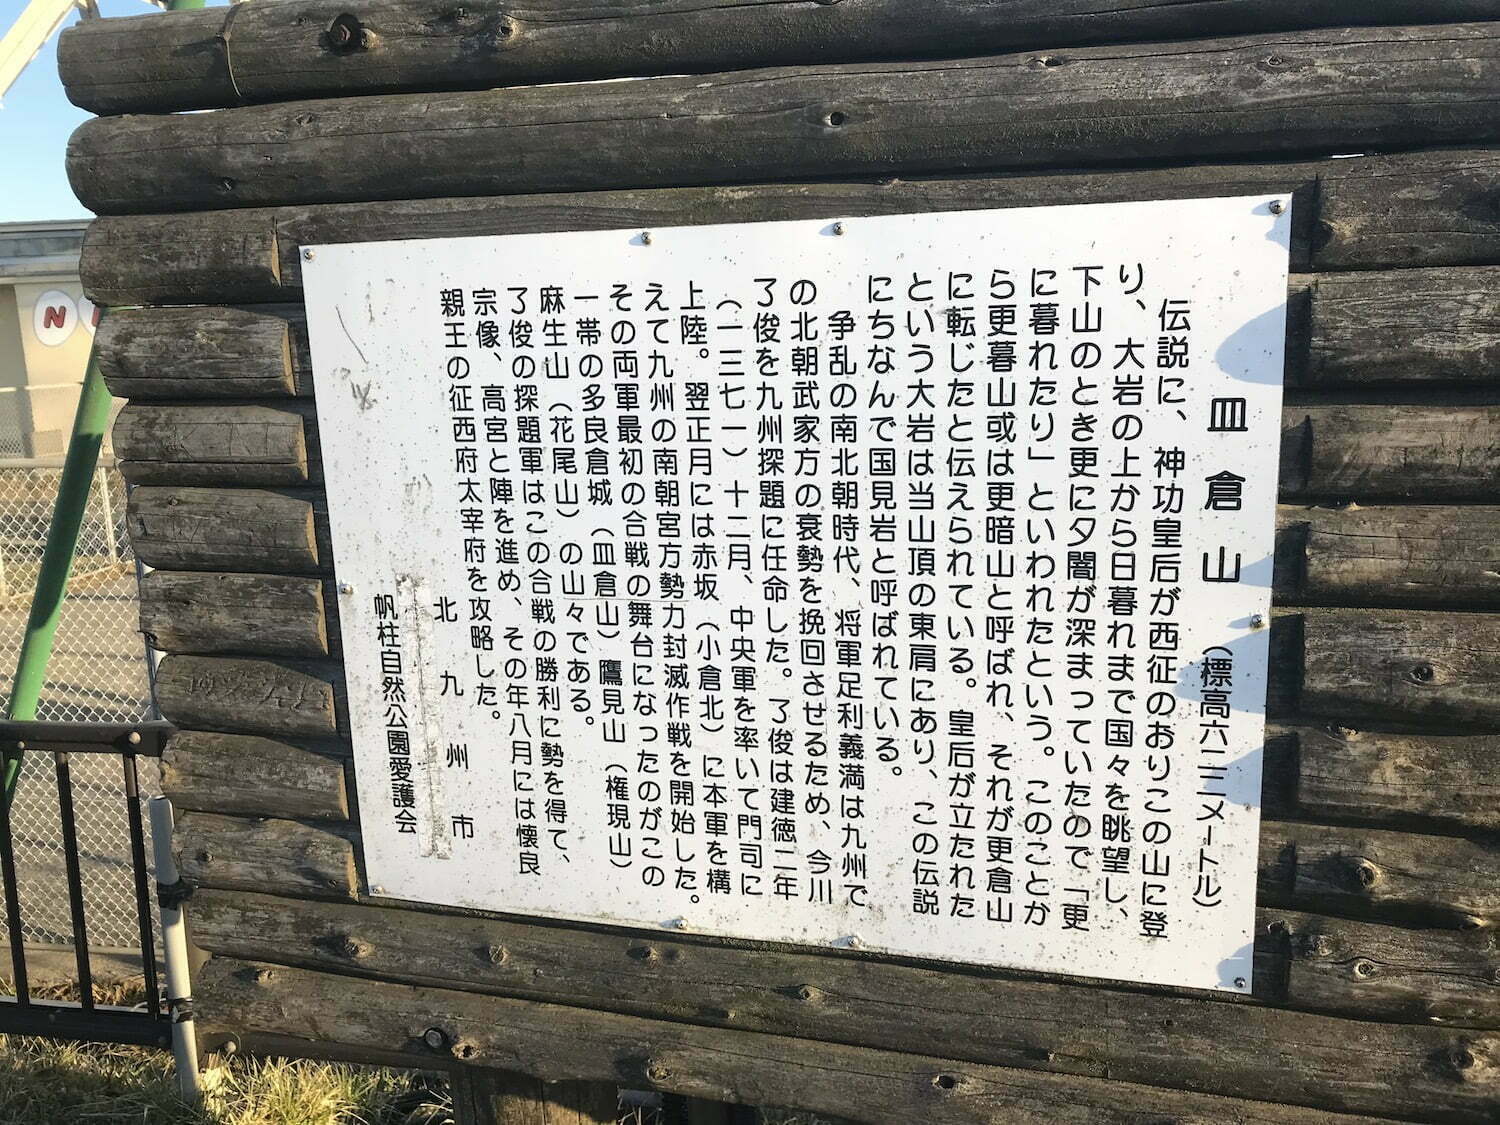 Sarakura Mt. explanation